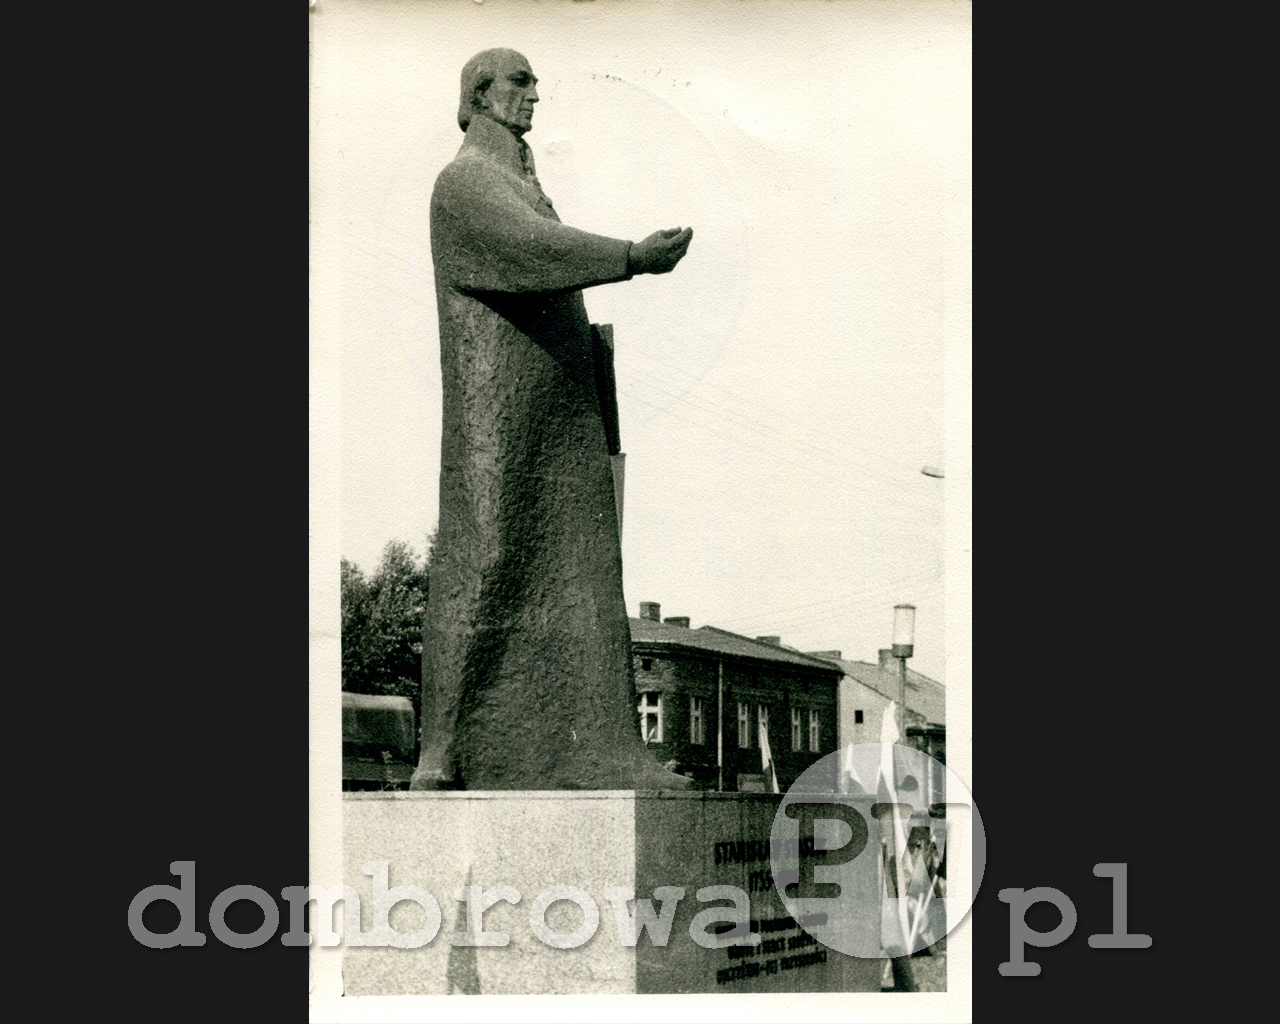 1966 r. Dąbrowa Górnicza - Pomnik Stanisława Staszica (Koło Fotograficzne)